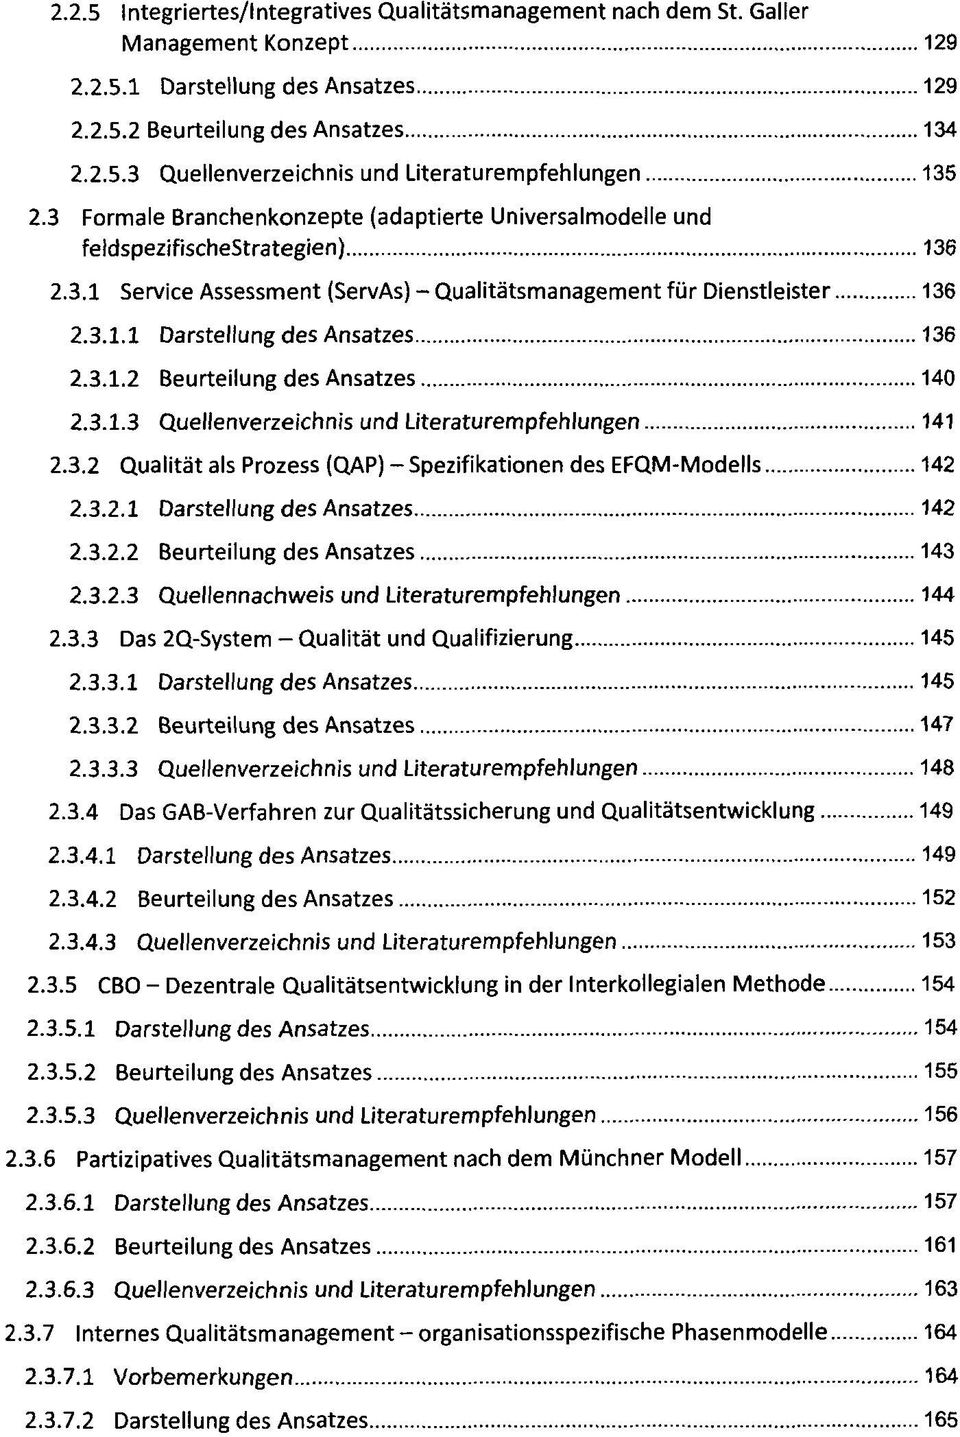 3.1.2 Beurteilung des Ansatzes 140 2.3.1.3 Quellenverzeichnis und Literaturempfehlungen 141 2.3.2 Qualität als Prozess (QAP) - Spezifikationen des EFQM-Modells 142 2.3.2.1 Darstellung des Ansatzes 142 2.